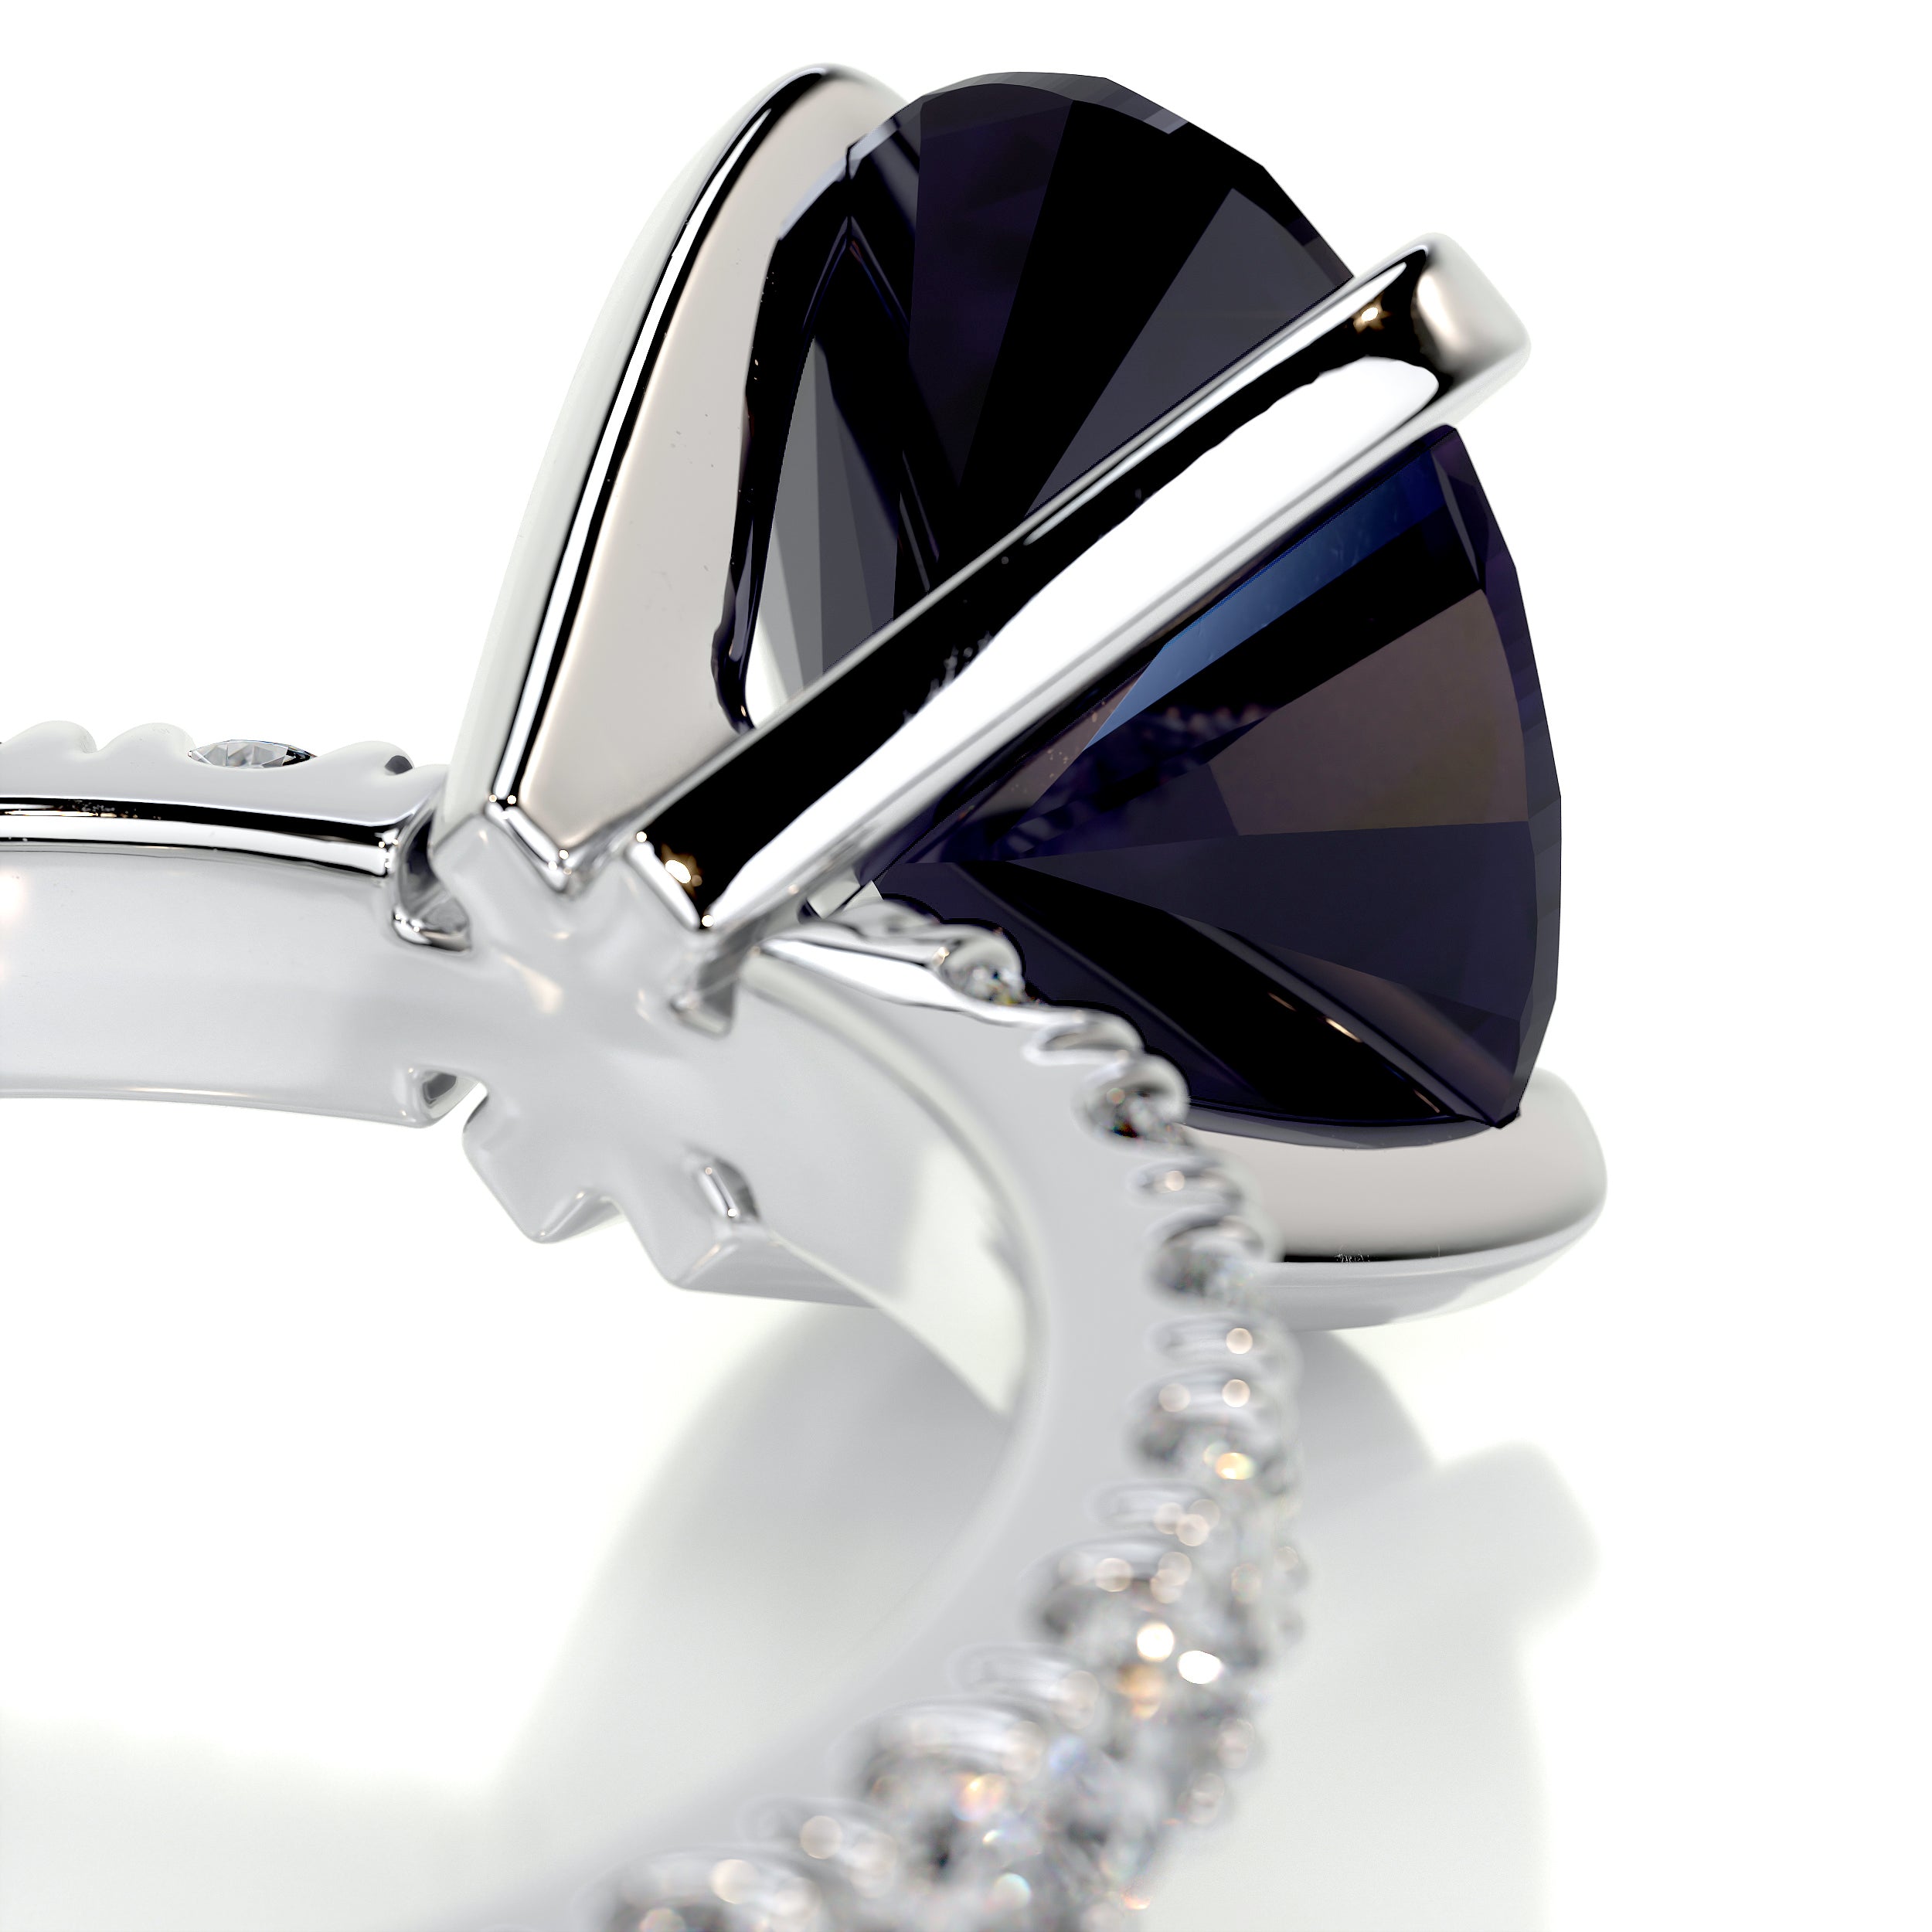 Alison Gemstone & Diamonds Ring   (3 Carat) -18K White Gold